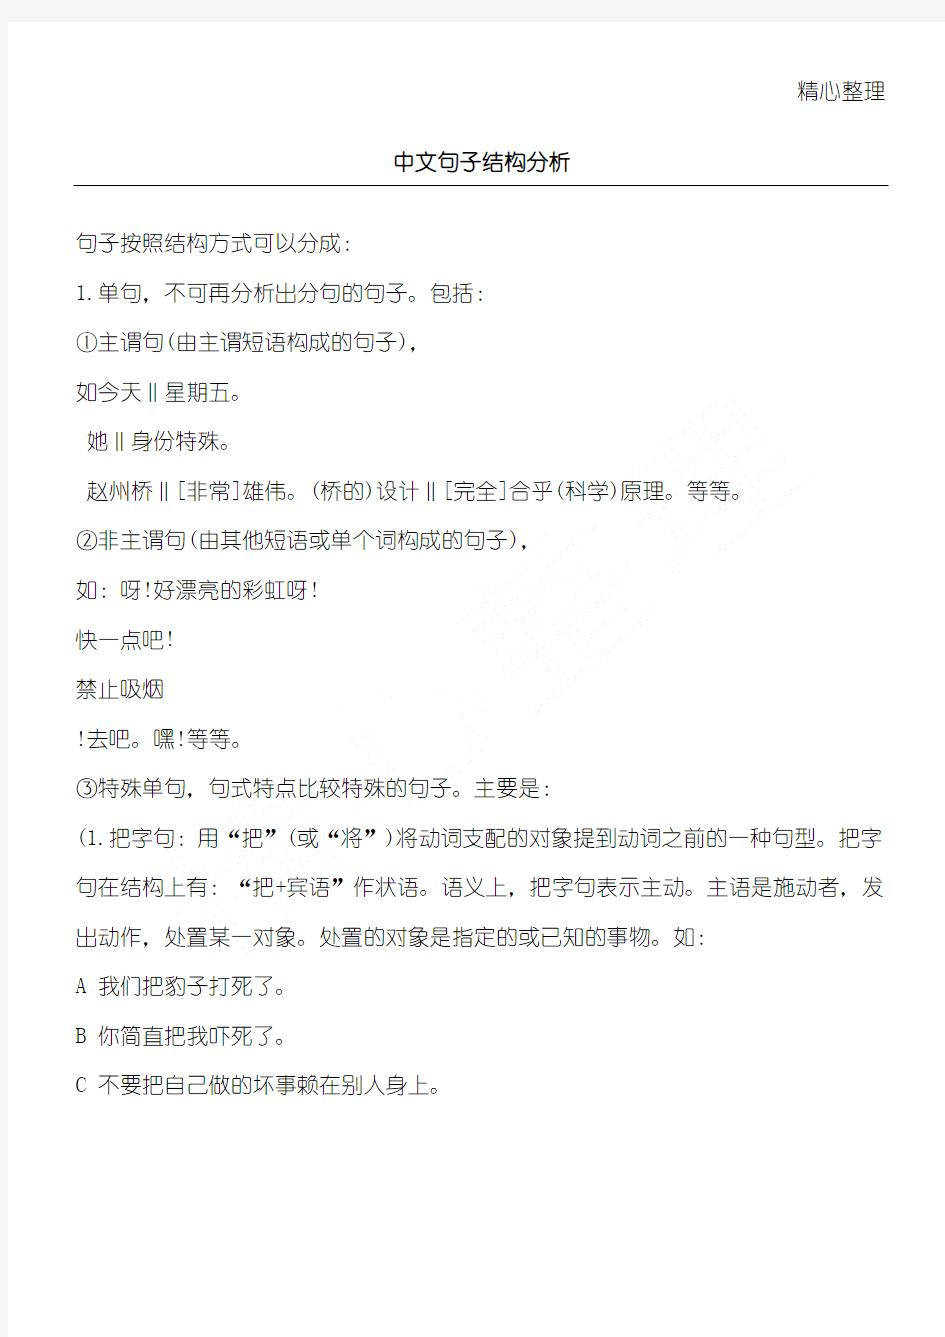 中文句子结构分析